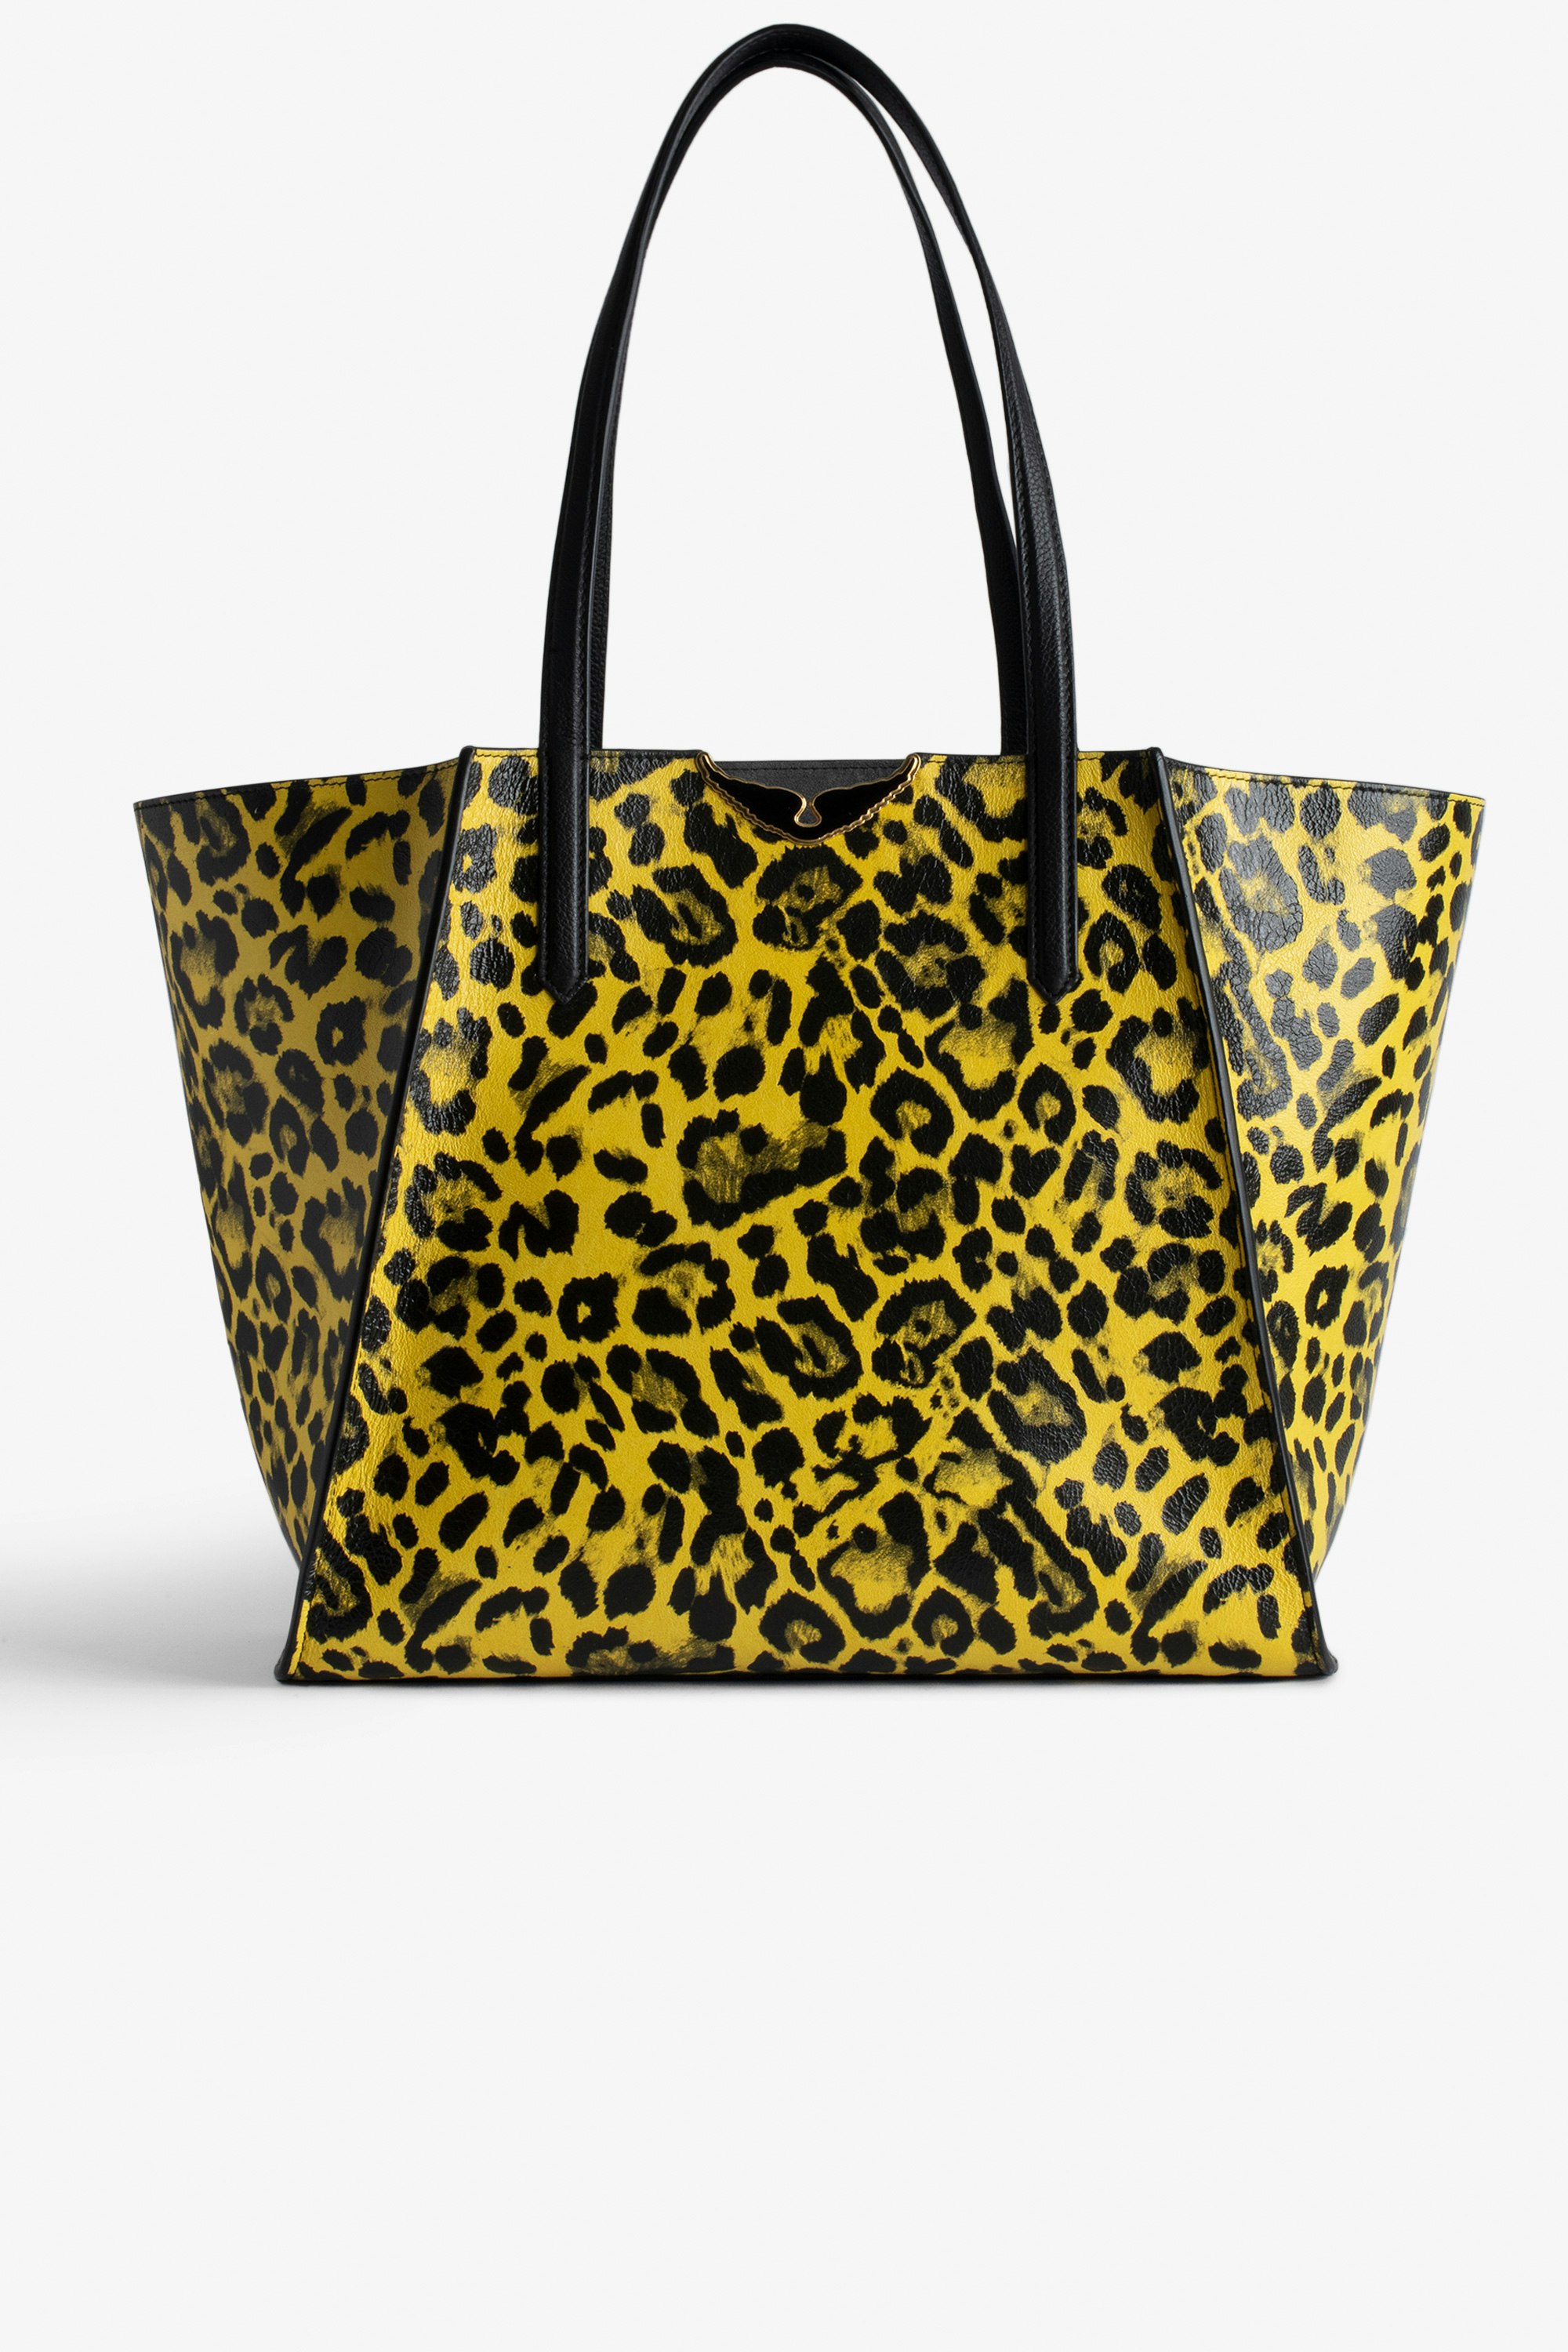 Bolso Le Borderline Leopardo Bolso tote reversible amarillo de piel brillante con estampado de leopardo con asa metálica y alas para mujer.